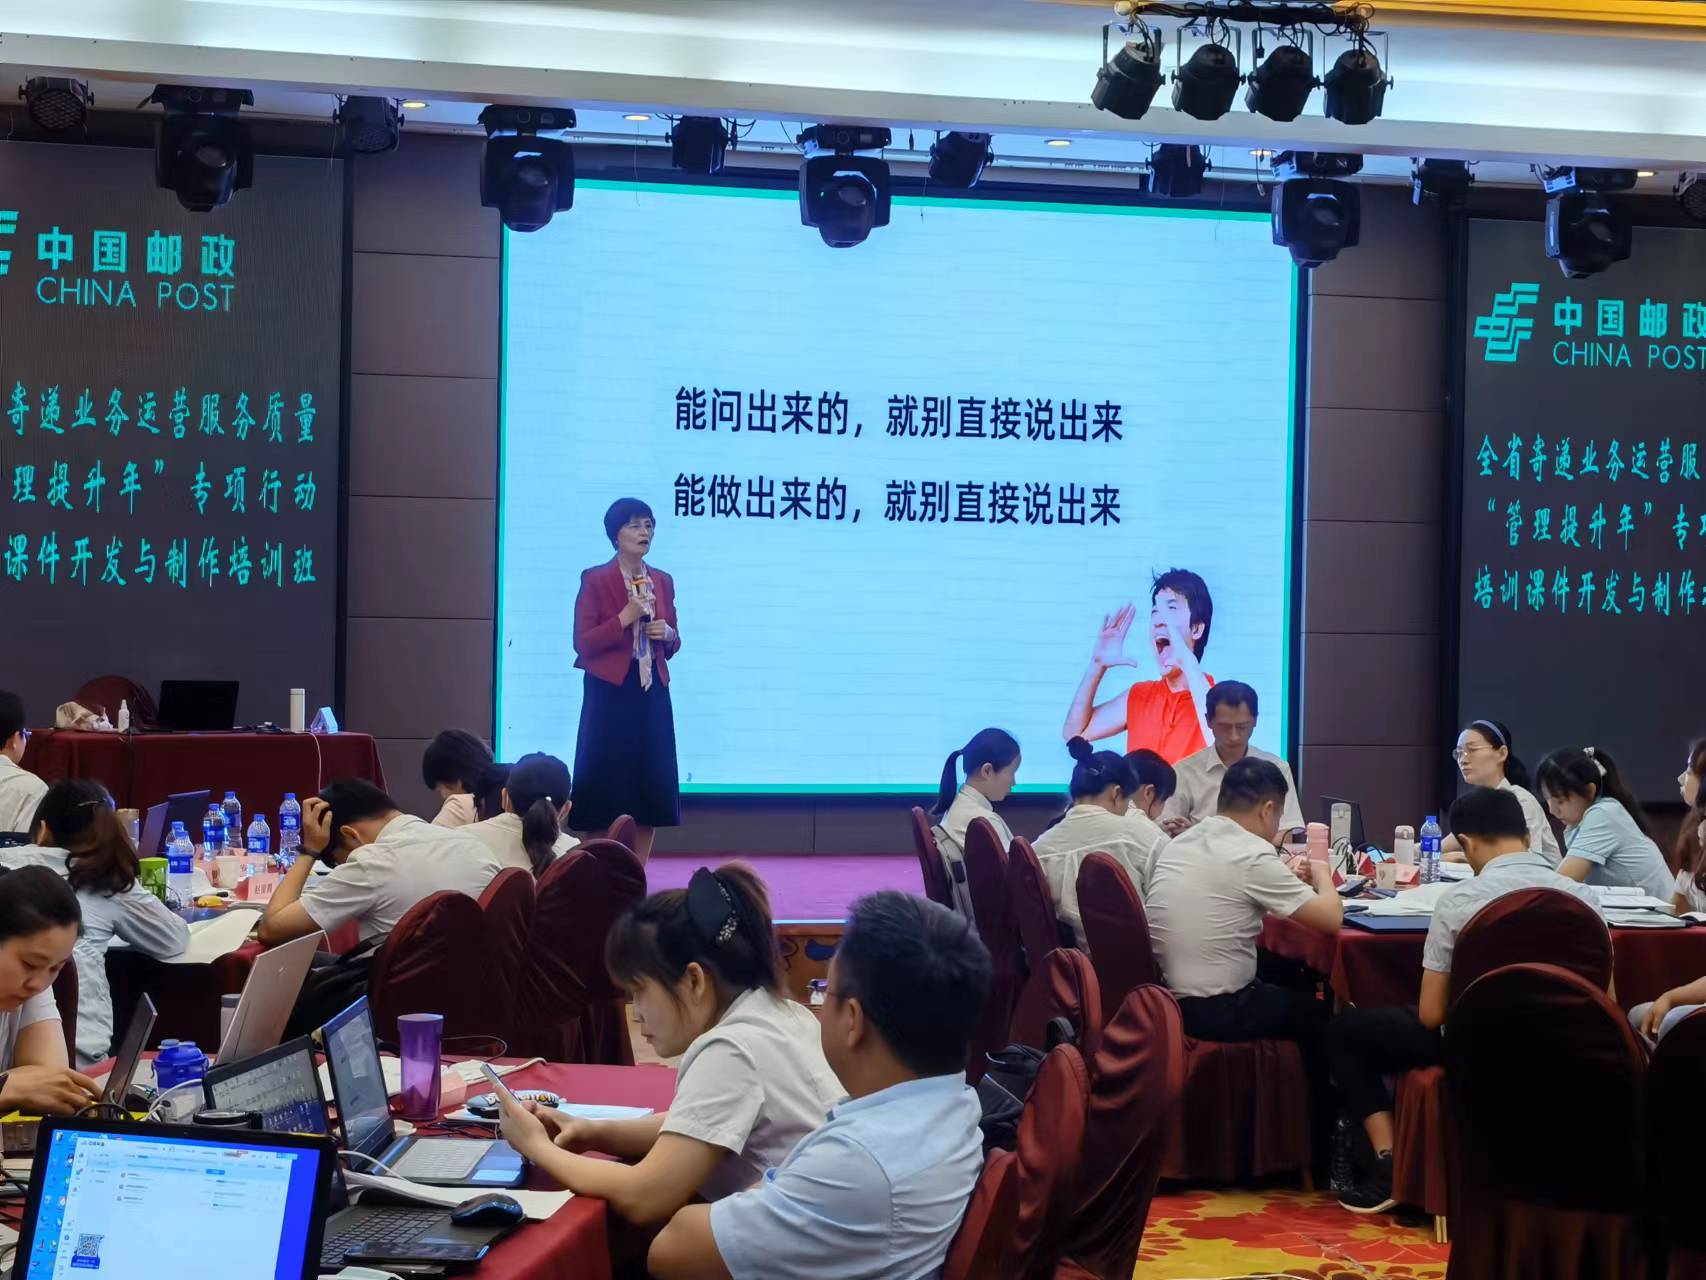 2022年6月19-24张一丹老师为中国邮政培训《课程开发与授课技巧》圆满结束！